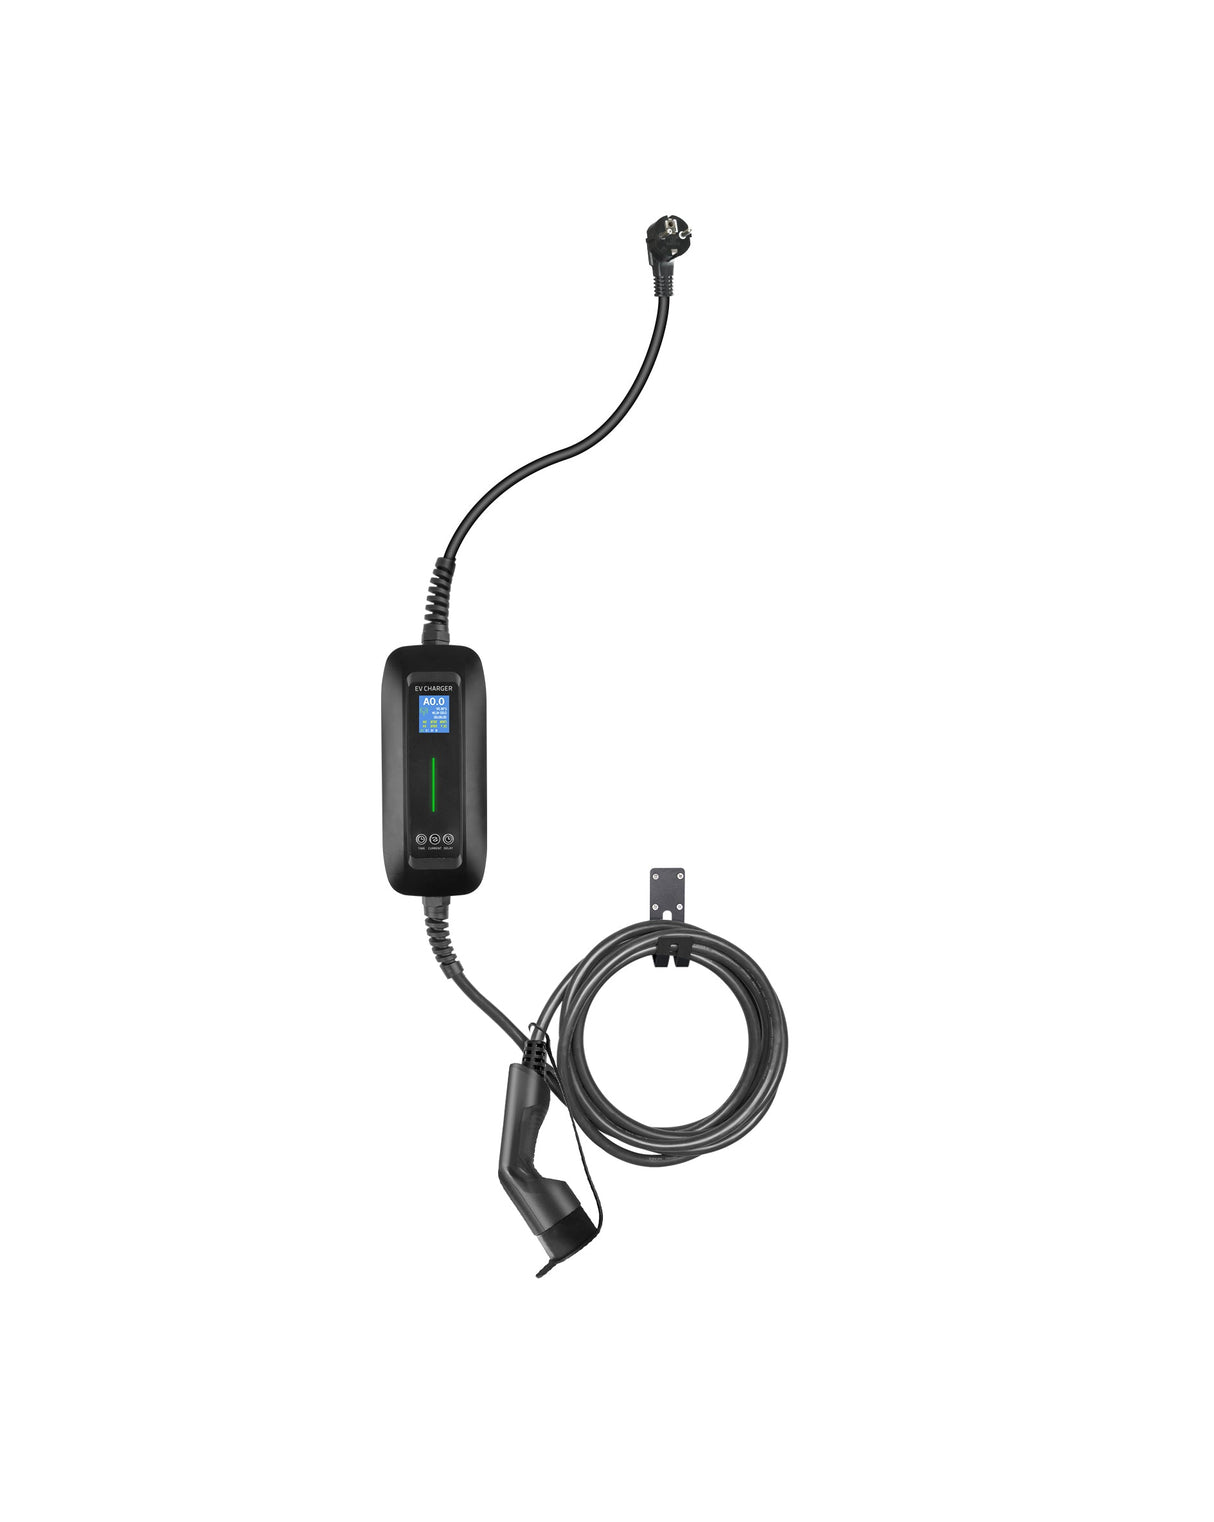 Mobile Charger Lightyear One - LCD Black Type 2 à Schuko - Fonction de chargement et de mémoire reportée